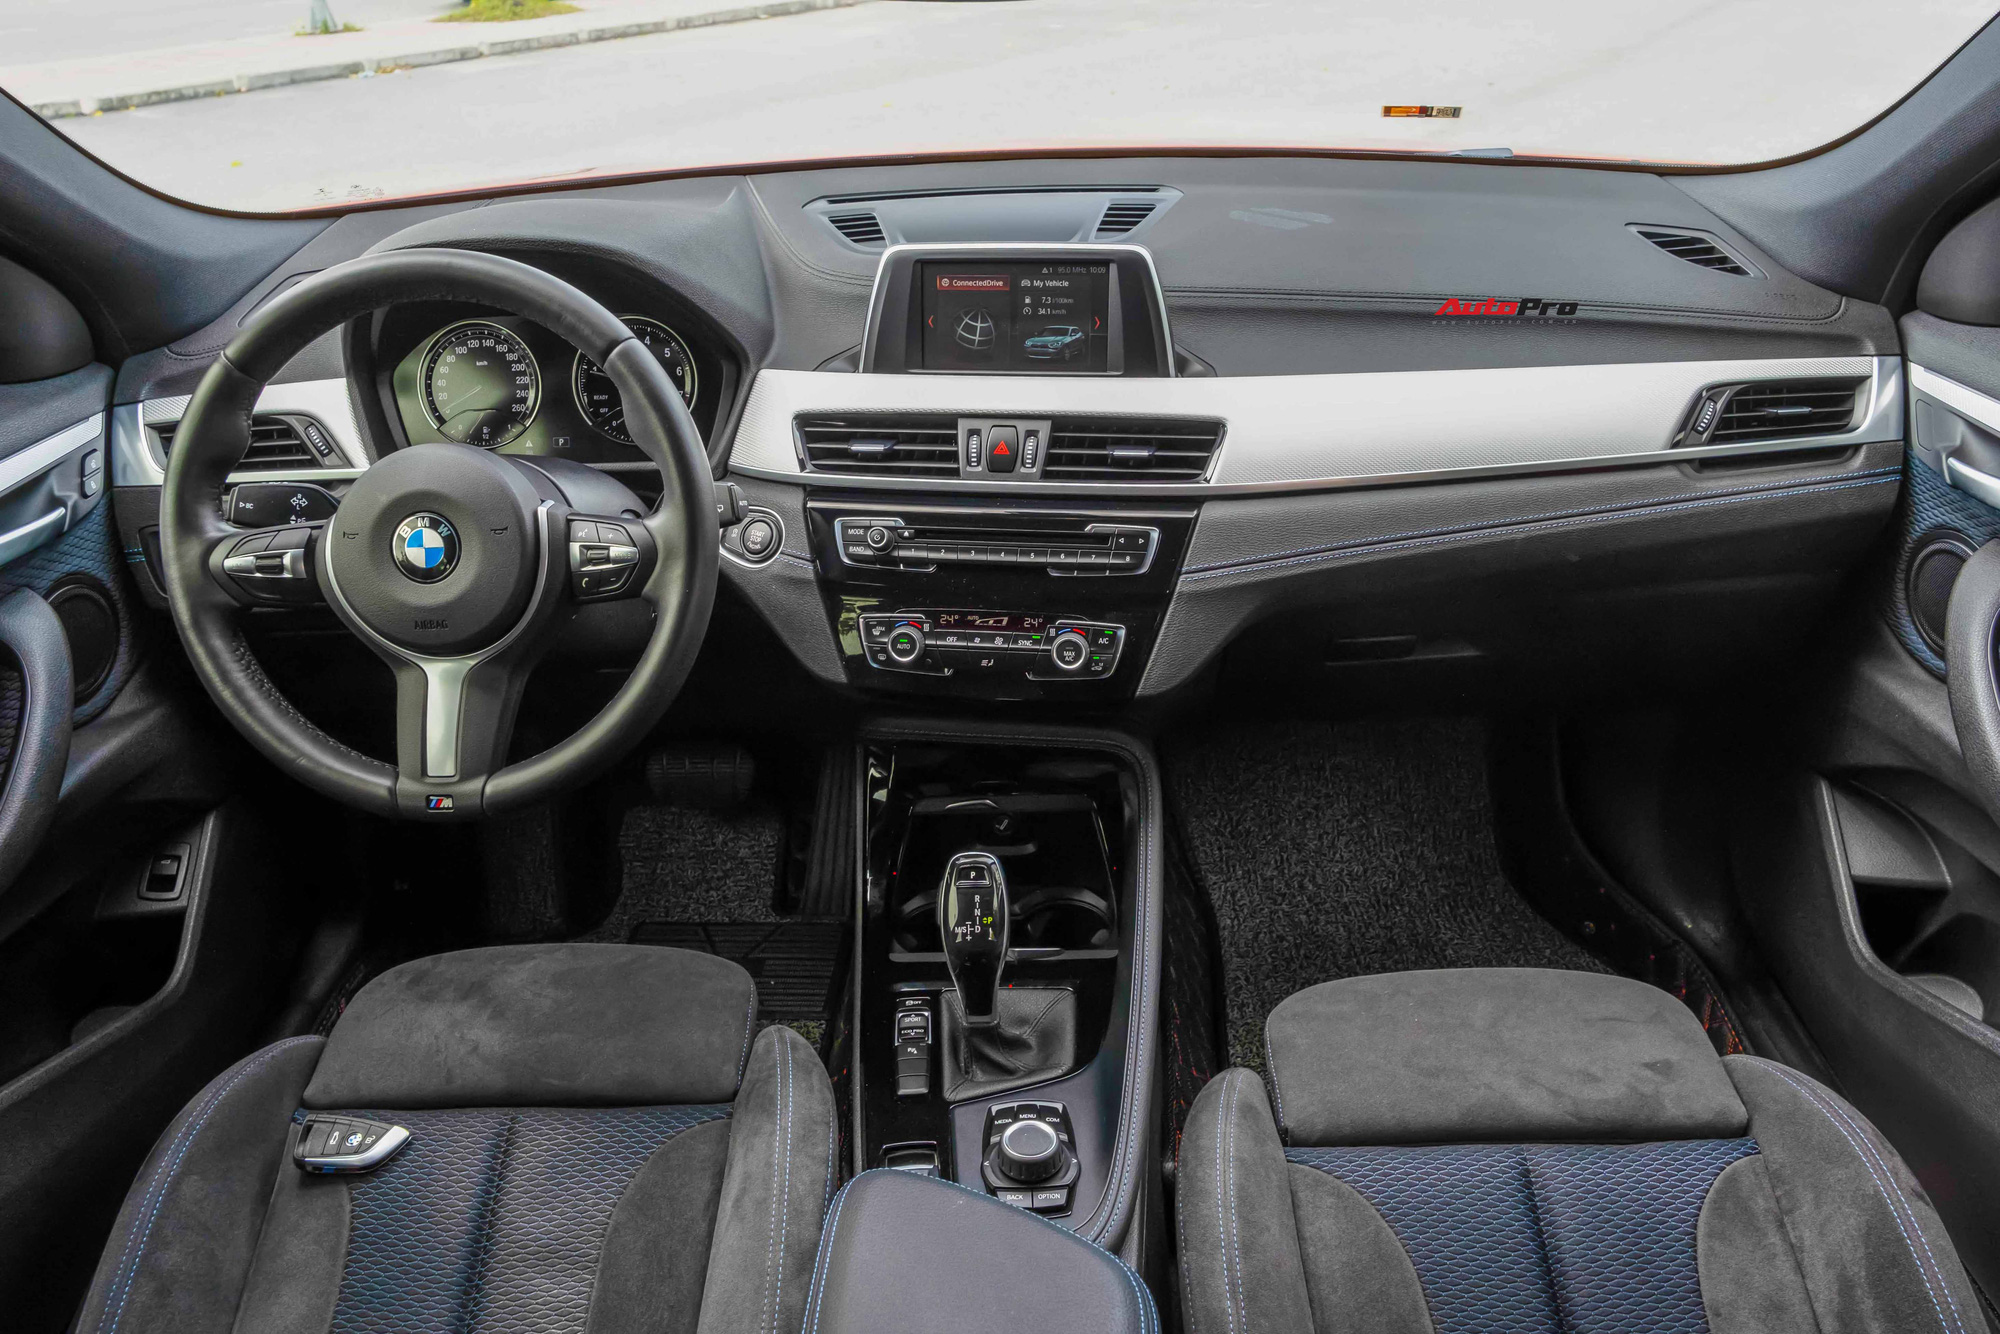 Đại gia bán BMW X2 giá 1,6 tỷ: 3 năm chạy 4.700km, xe chỉ cất trong nhà và mang đi bảo dưỡng - Ảnh 3.